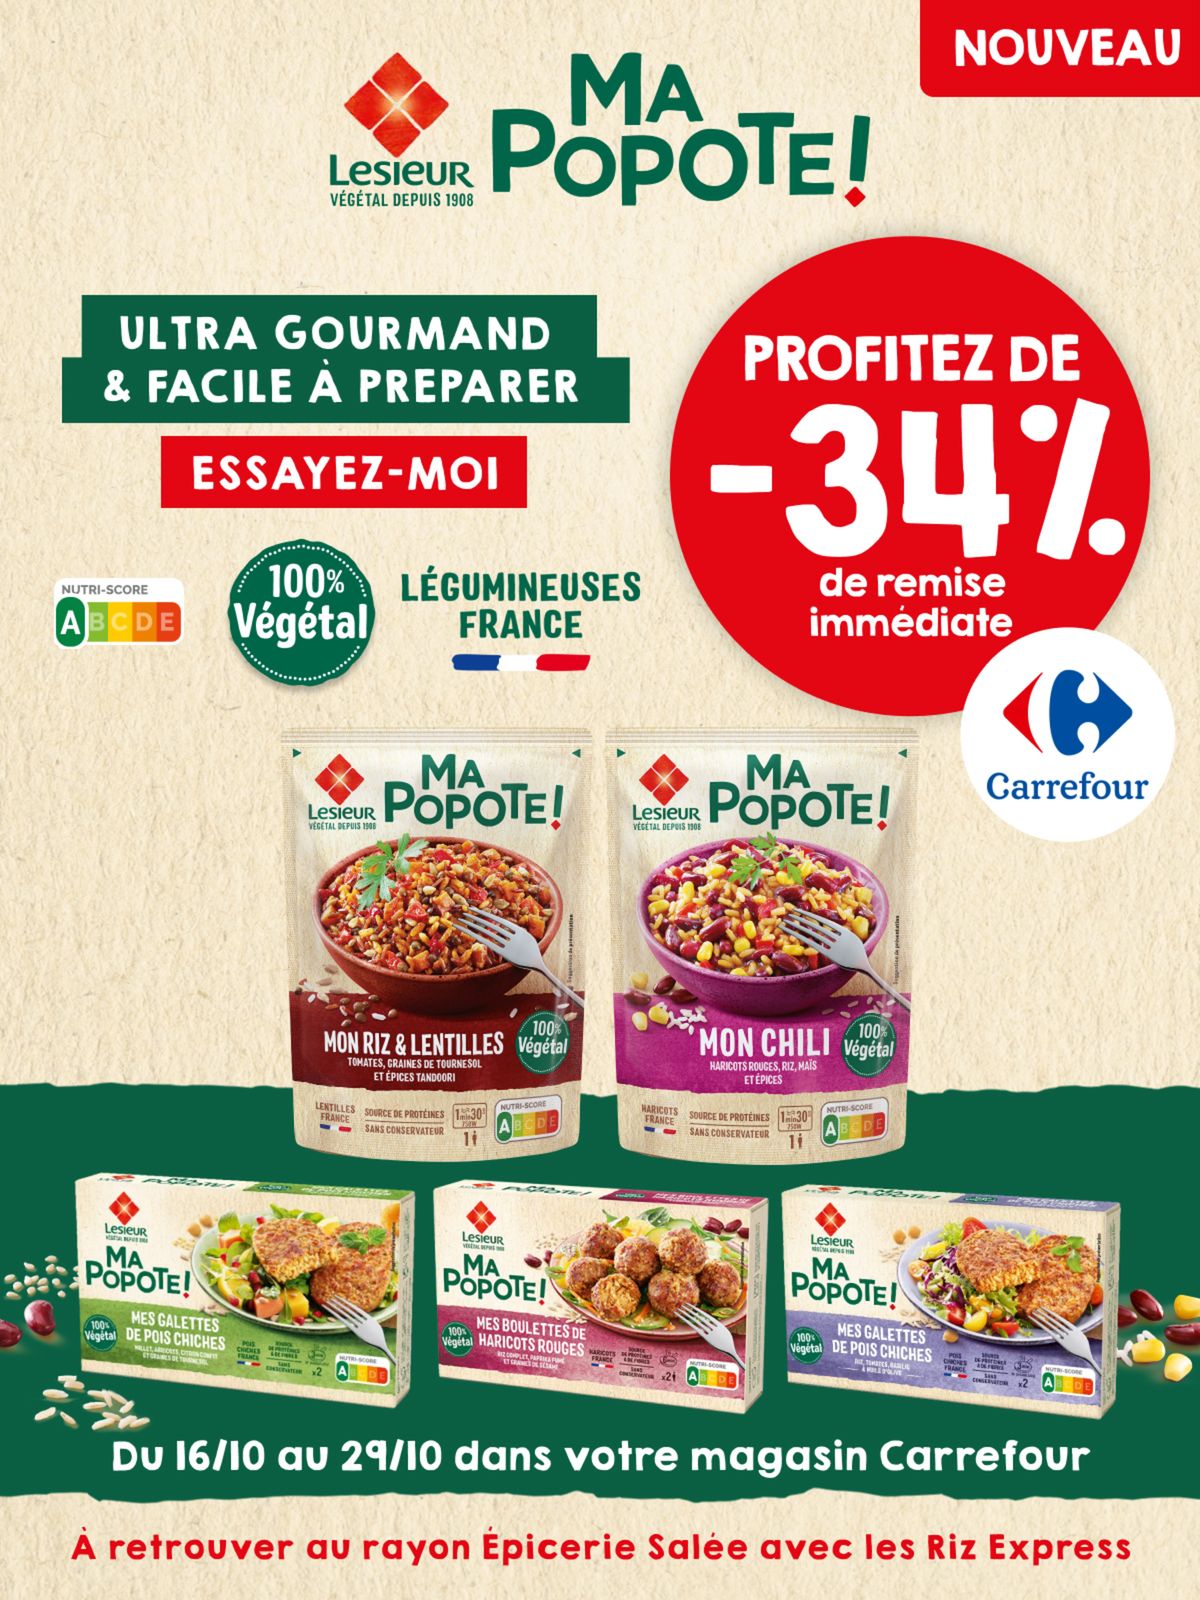 Catalogue Profitez de -34% de remise immédiate Carrefour ! , page 00004